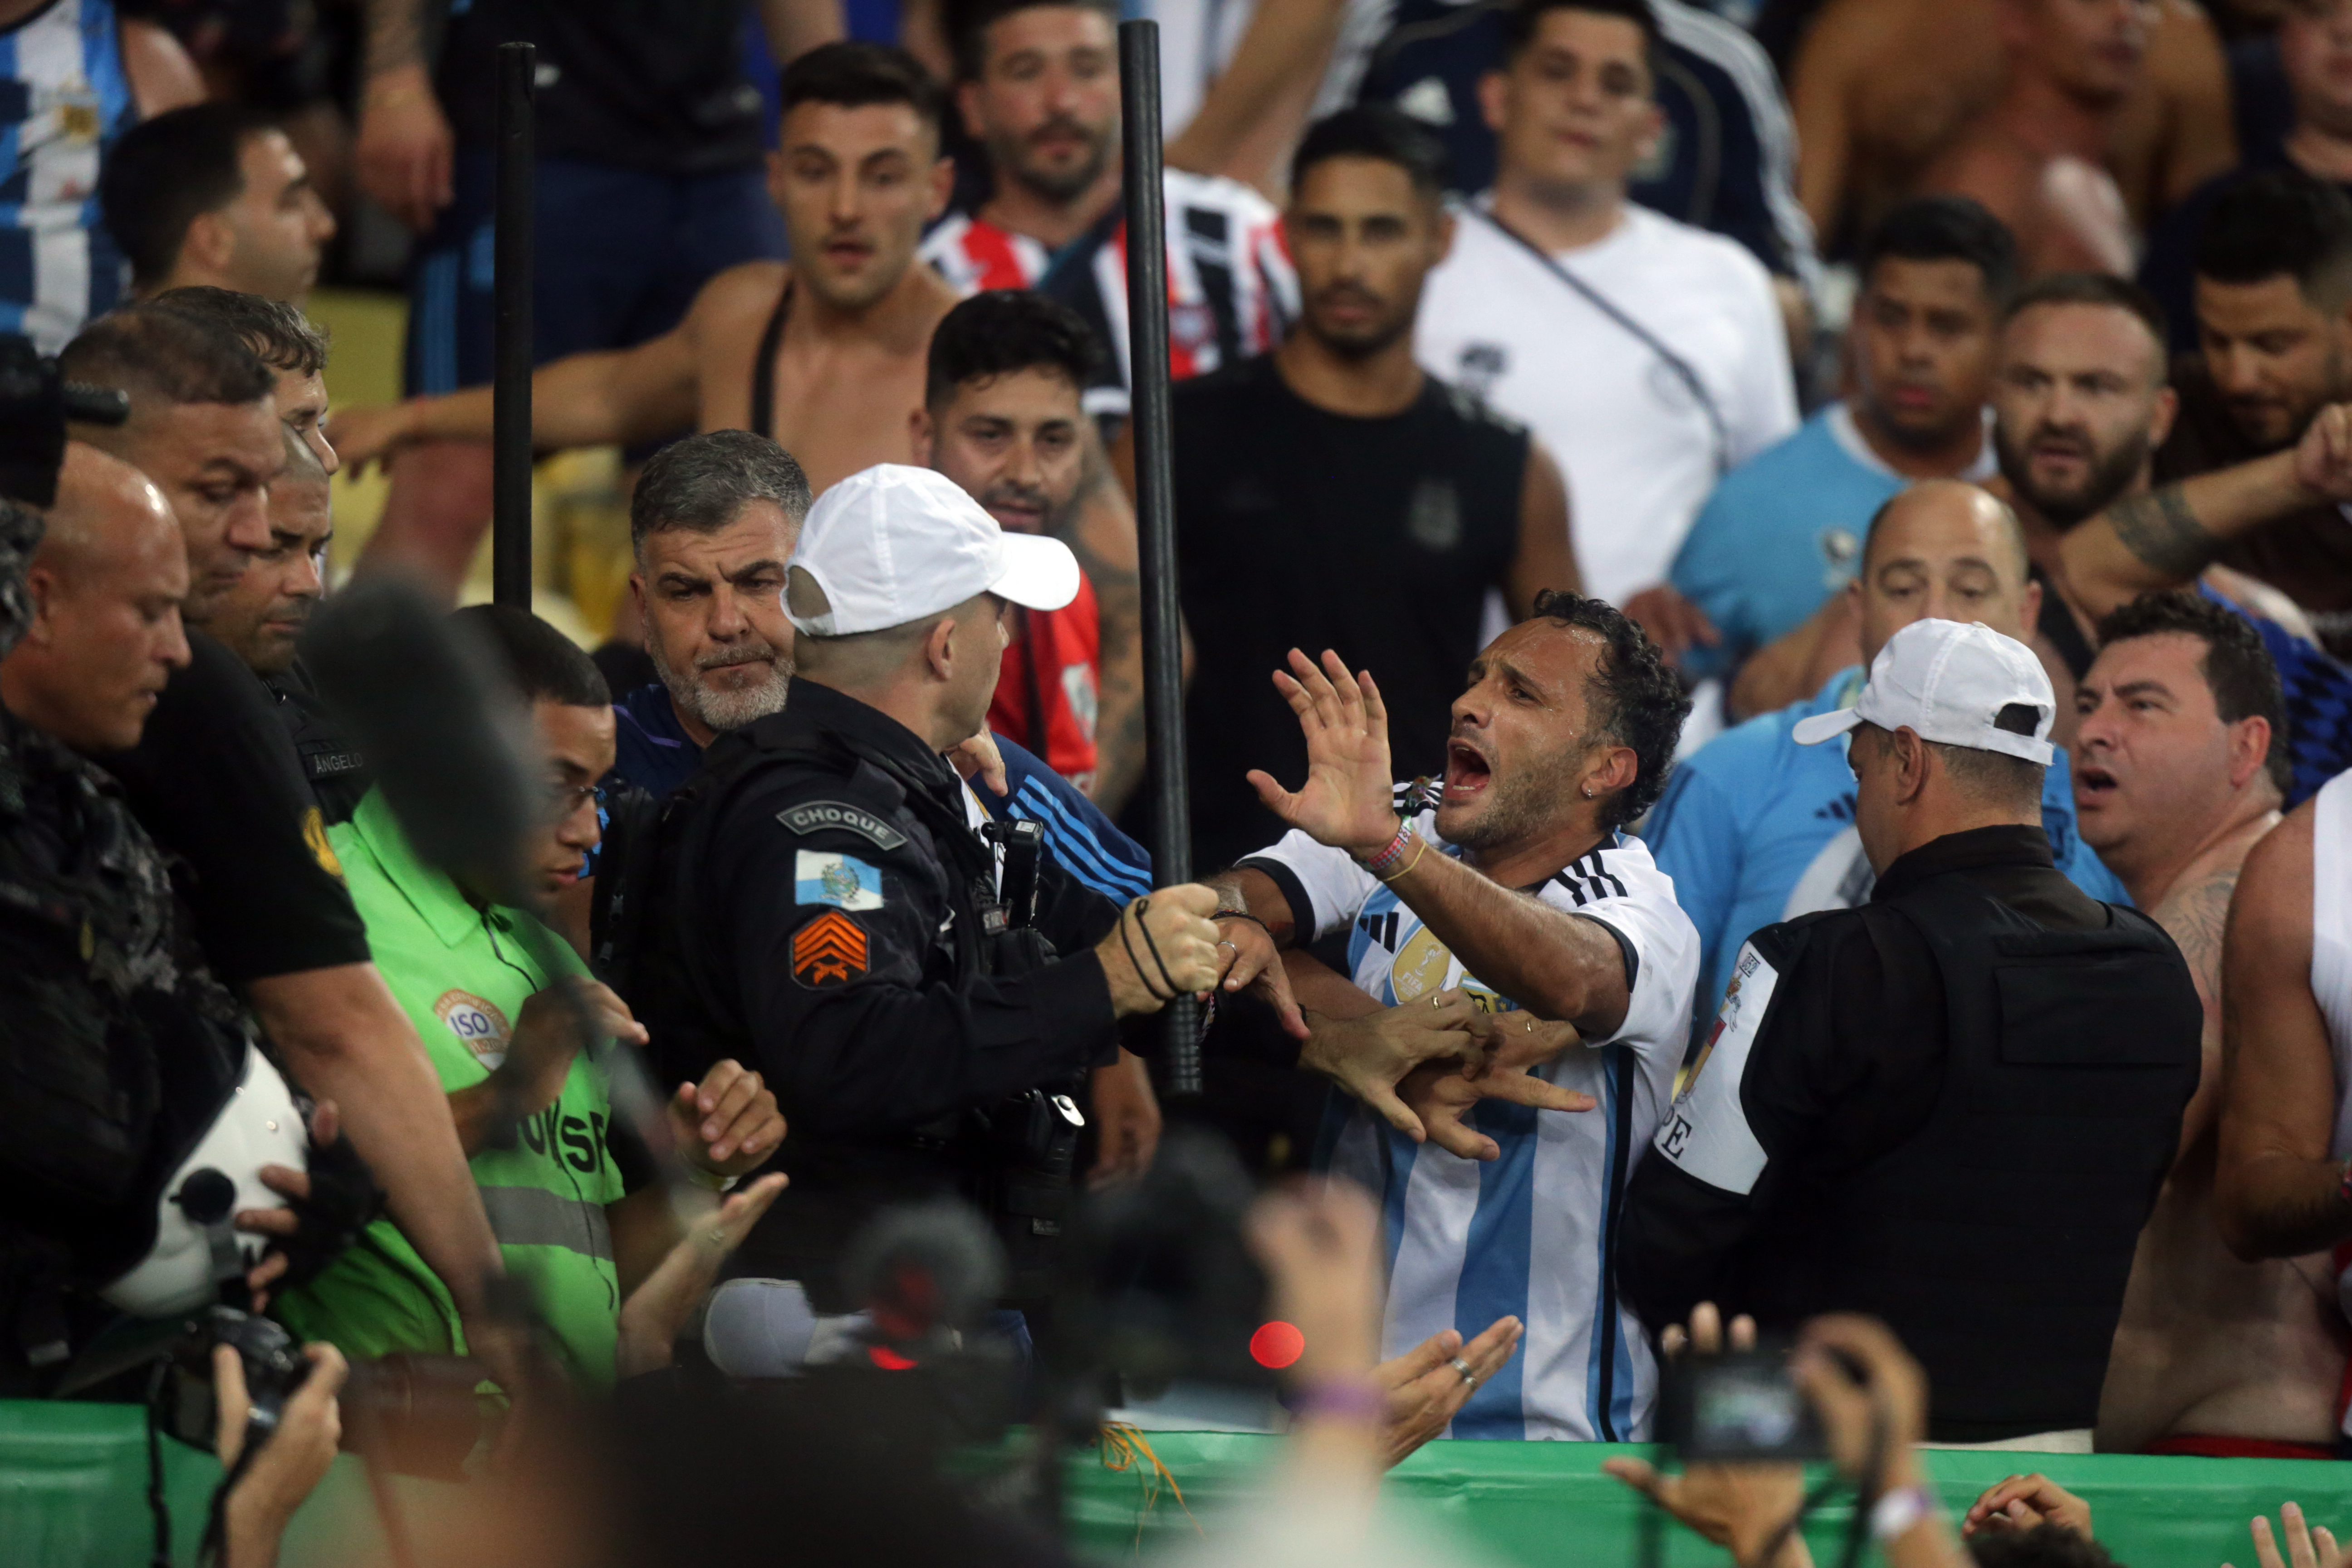 Entre vergonha e memes: torcedores reagem à suspensão do jogo entre Brasil  e Argentina